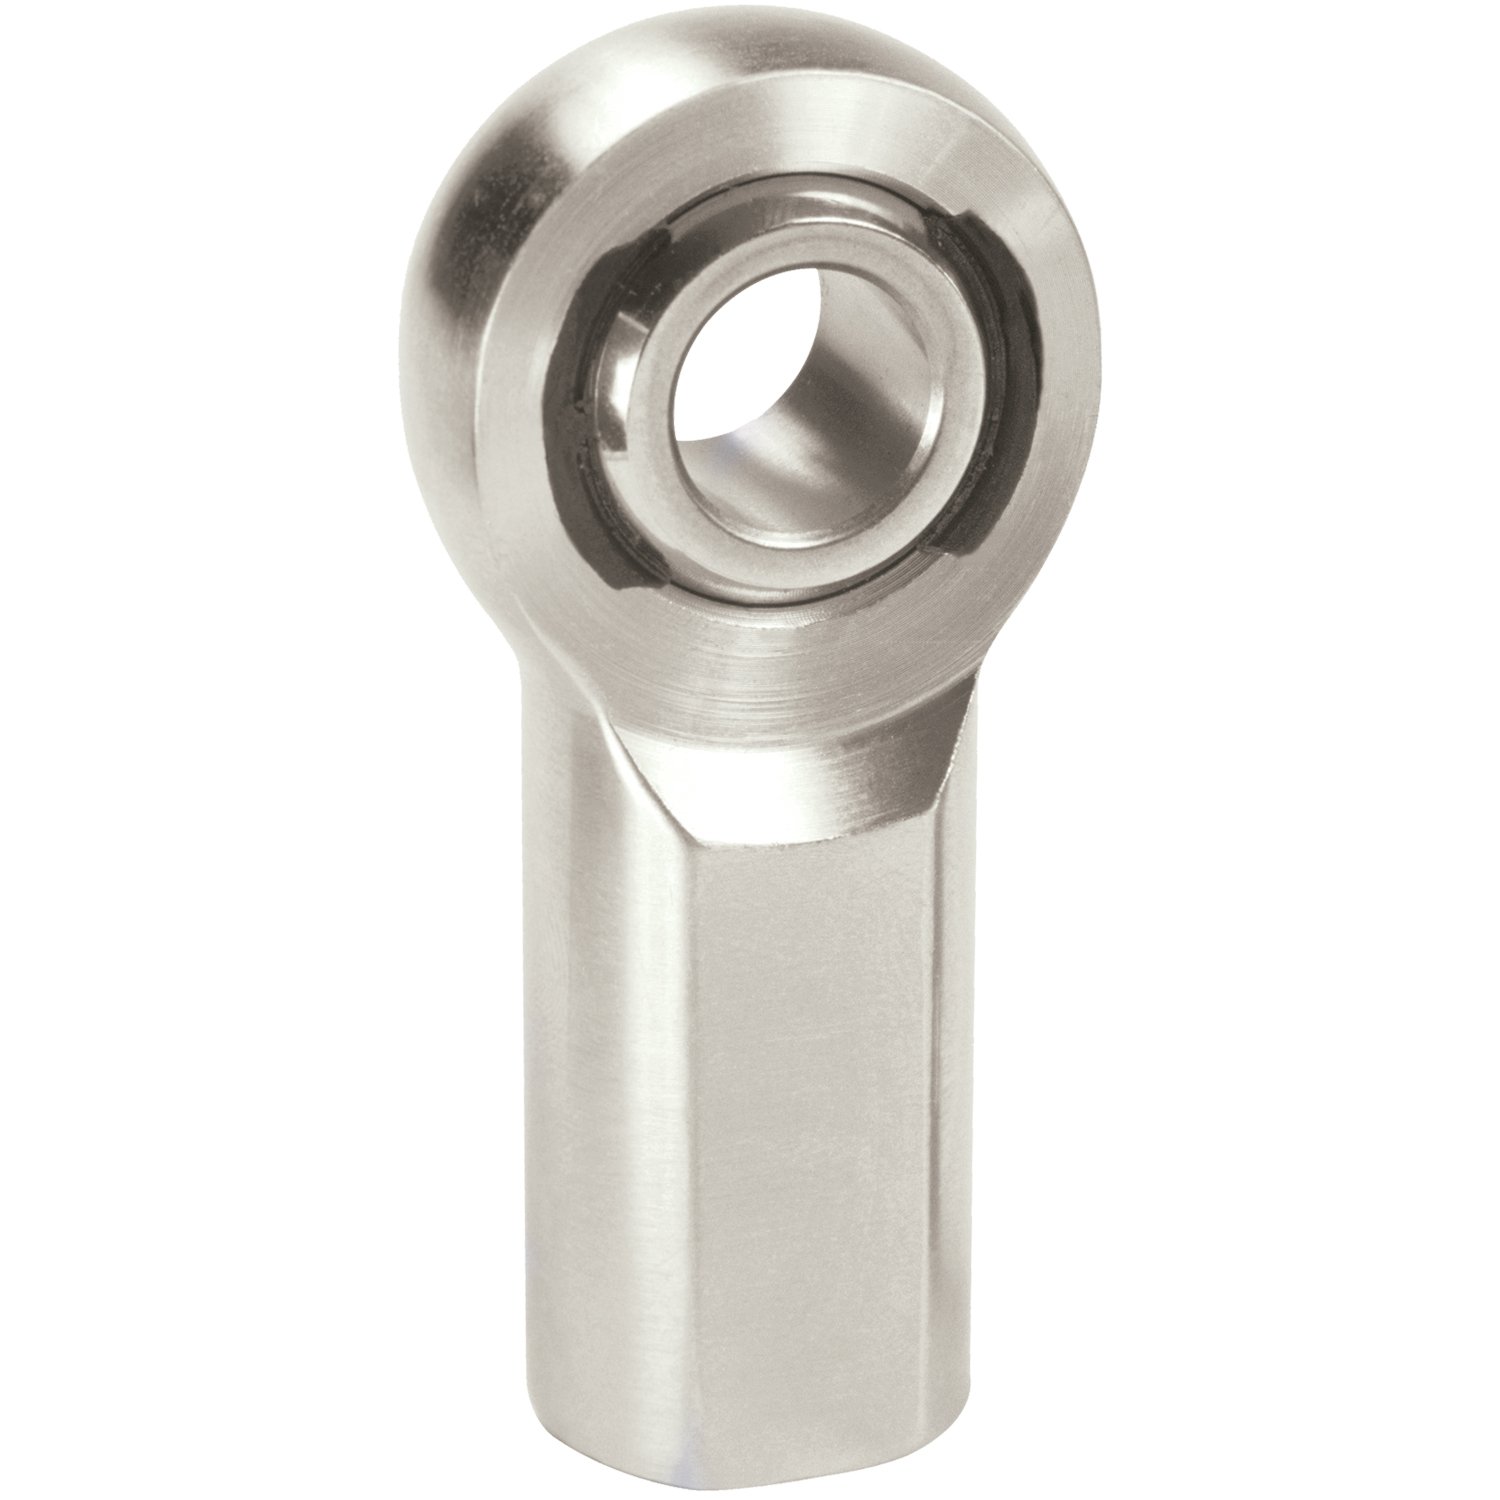 XF Chromoly Steel Series Rod End Hole I.D.: .6250"